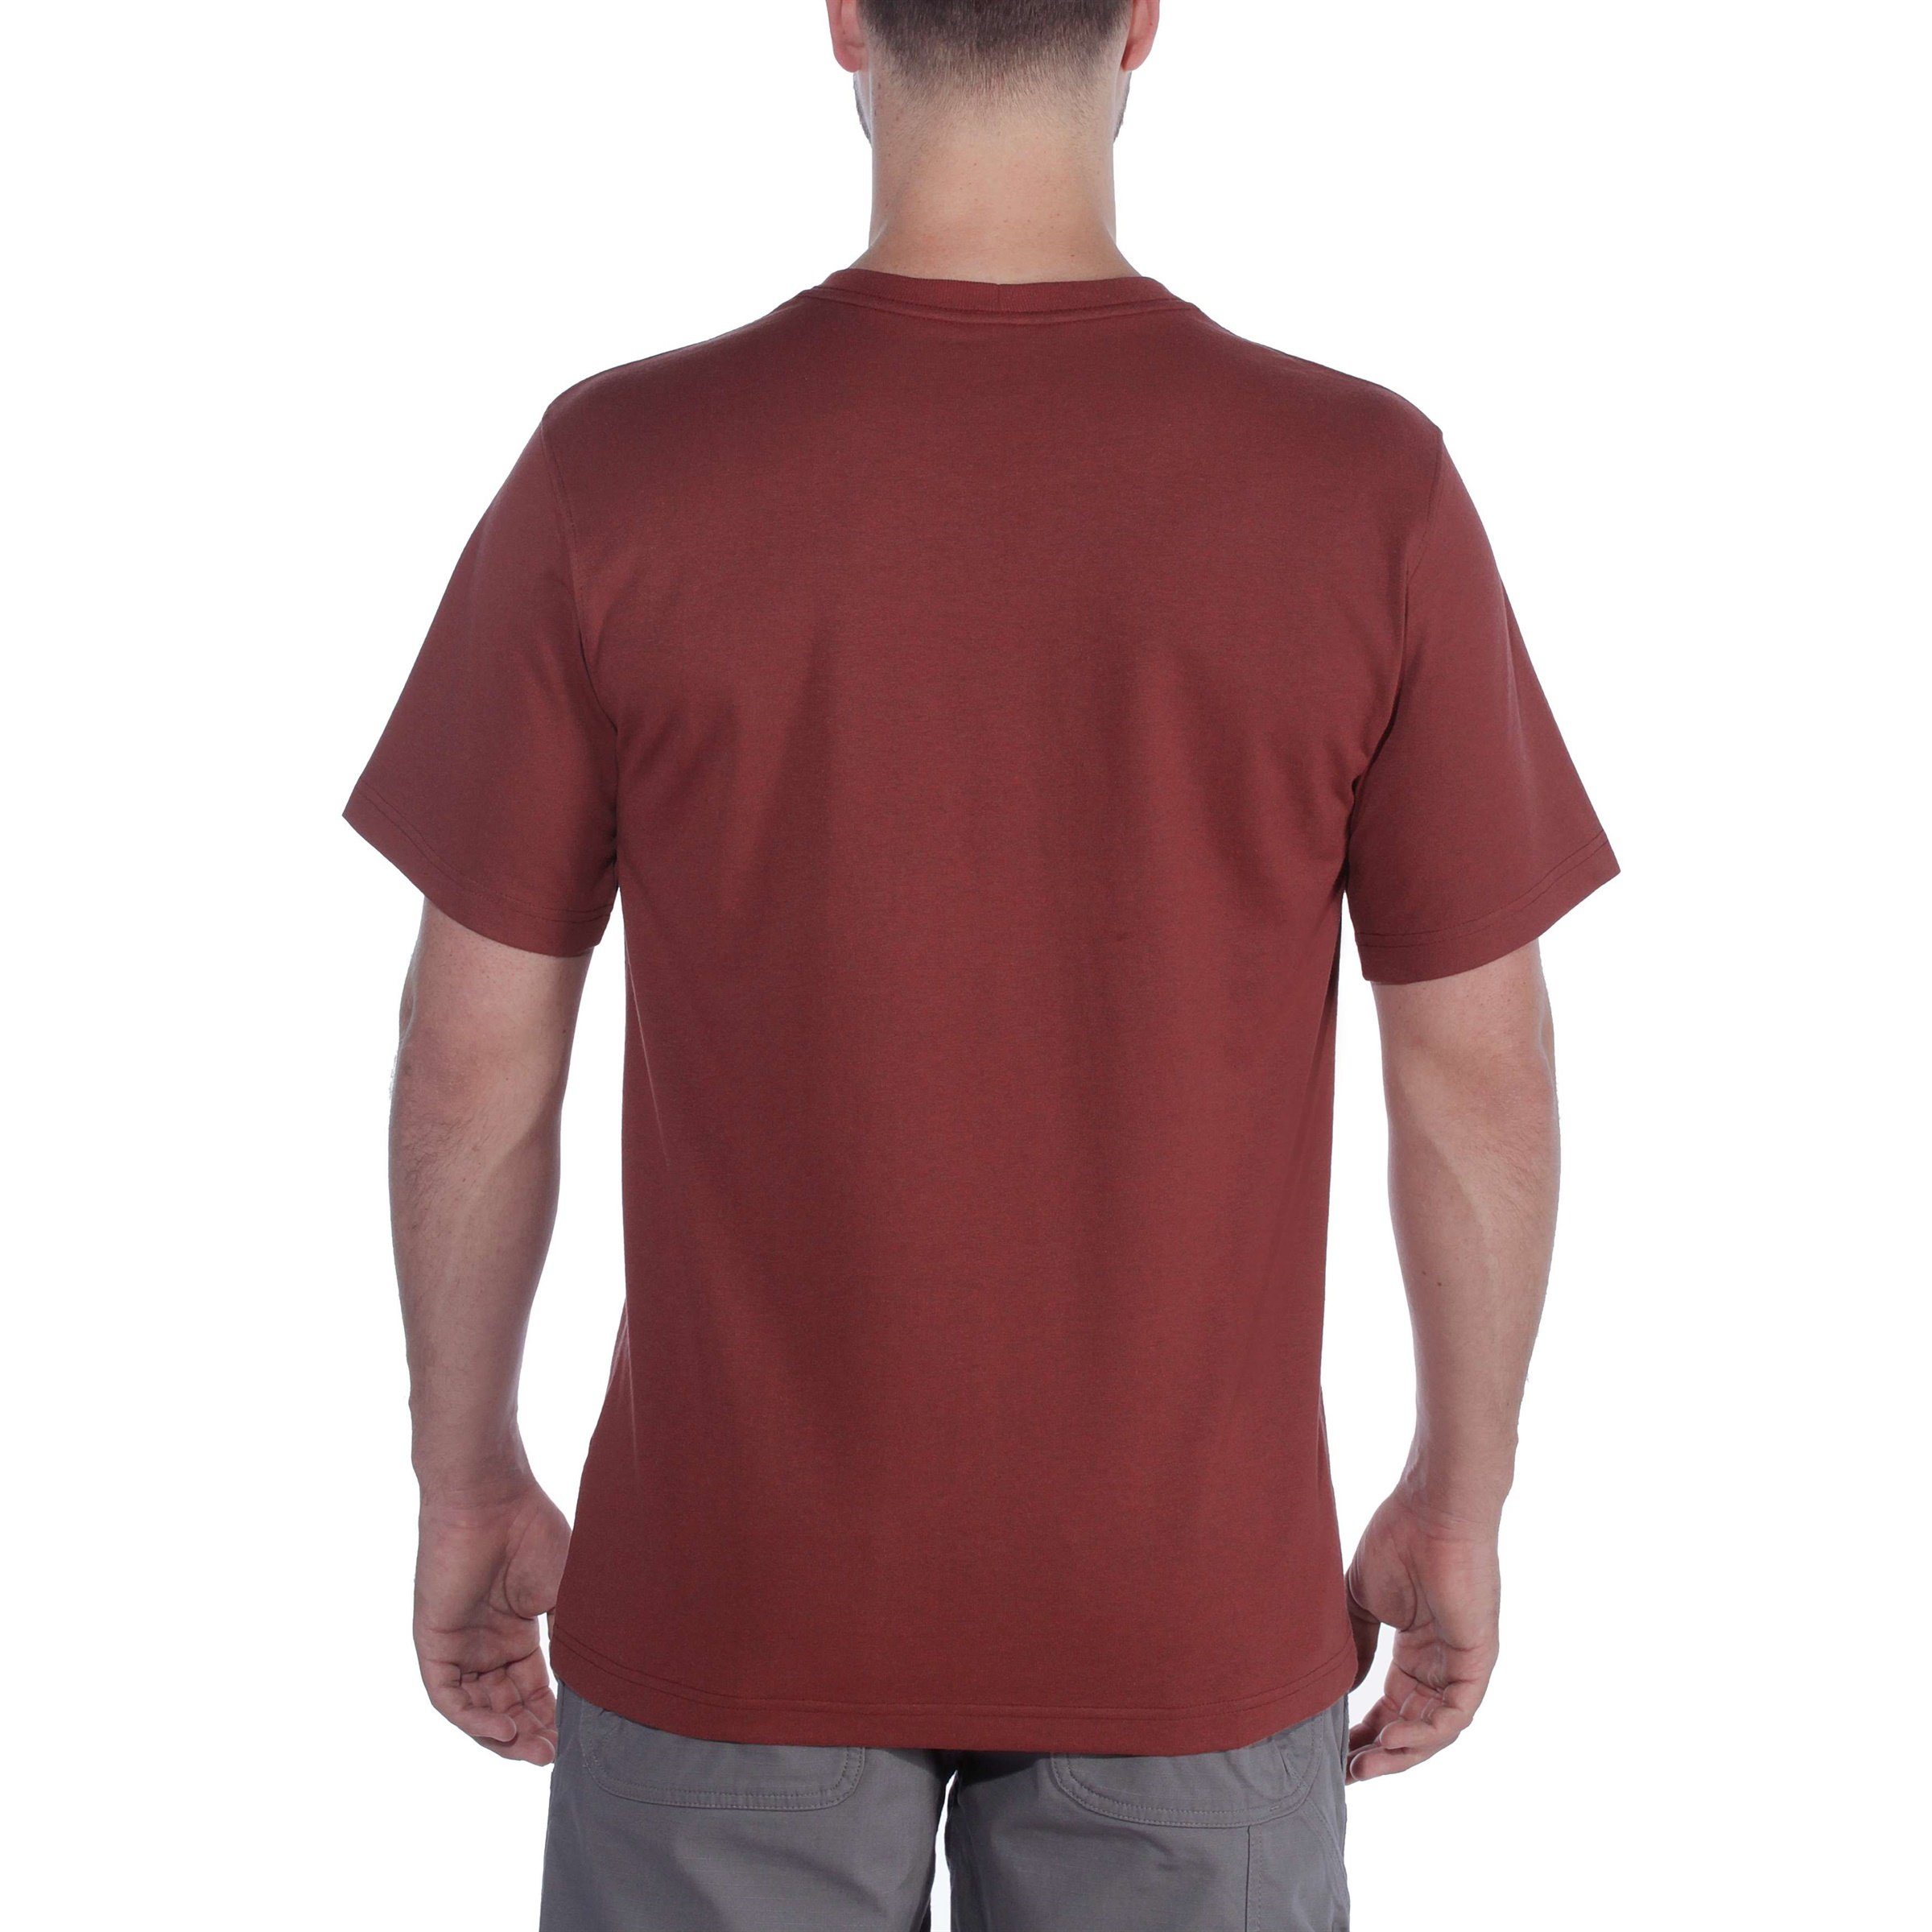 Heavyweight carbon Fit T-Shirt Herren Logo heather Short-Sleeve Carhartt Adult T-Shirt Graphic Relaxed Carhartt